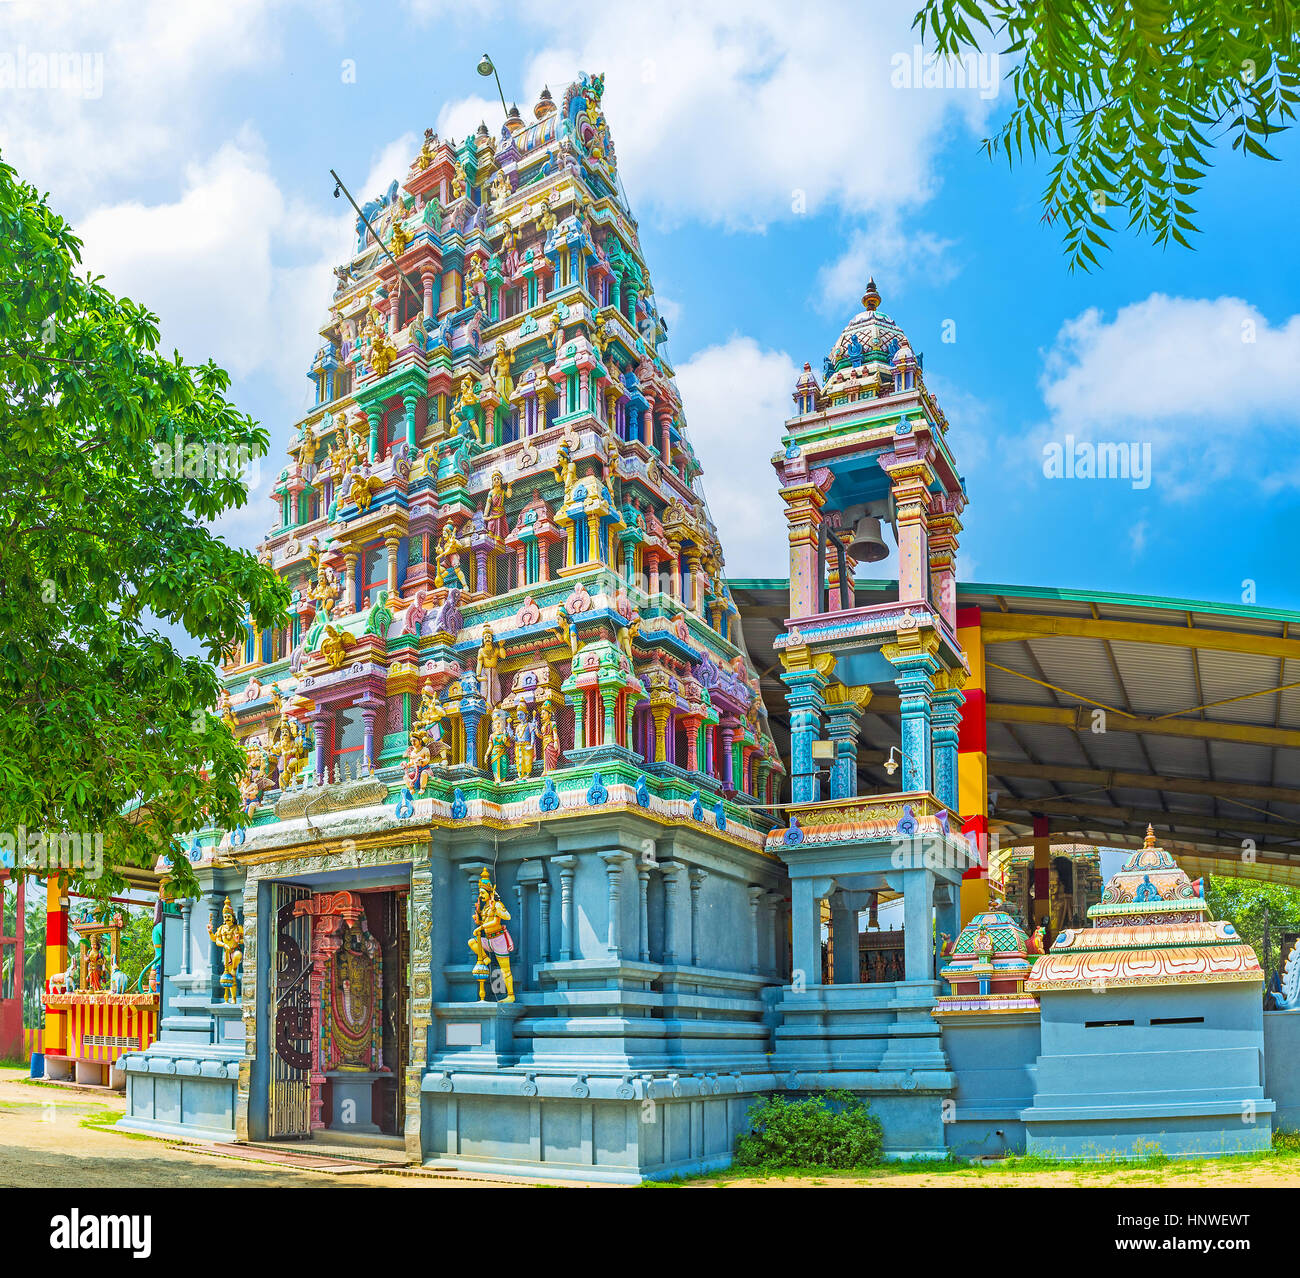 Der prächtige Haupteingang Murugan Tempel, der bunte Vimana (Shikhara) Turm mit Skulpturen verziert und hinduistischen Muster, Chilaw, Sri Lanka. Stockfoto